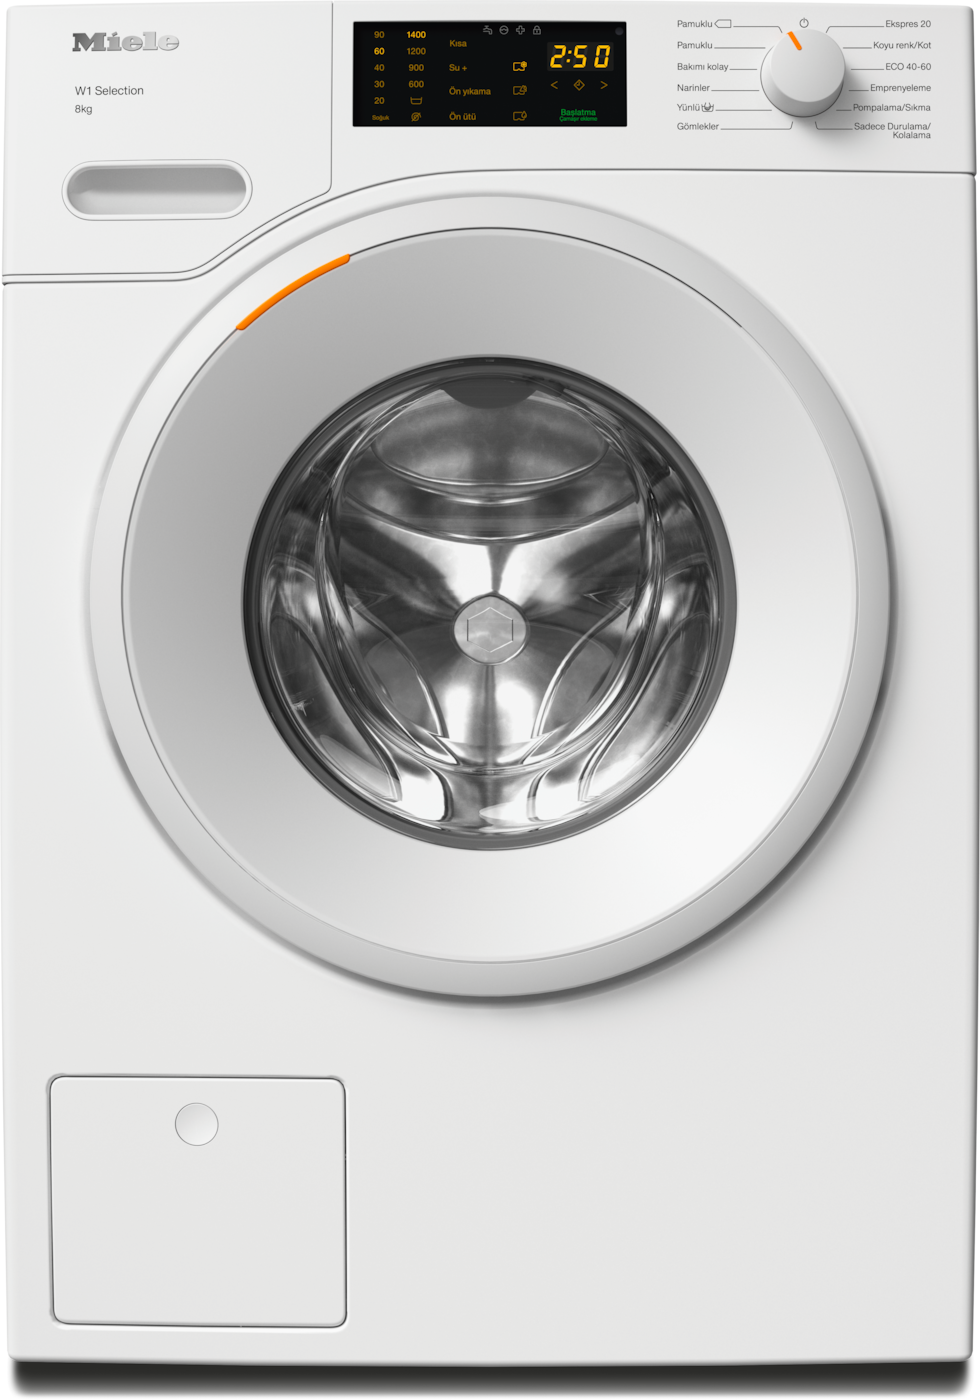 WSD123 WCS 8kg - Önden yüklemeli W1 çamaşır makinesi: 